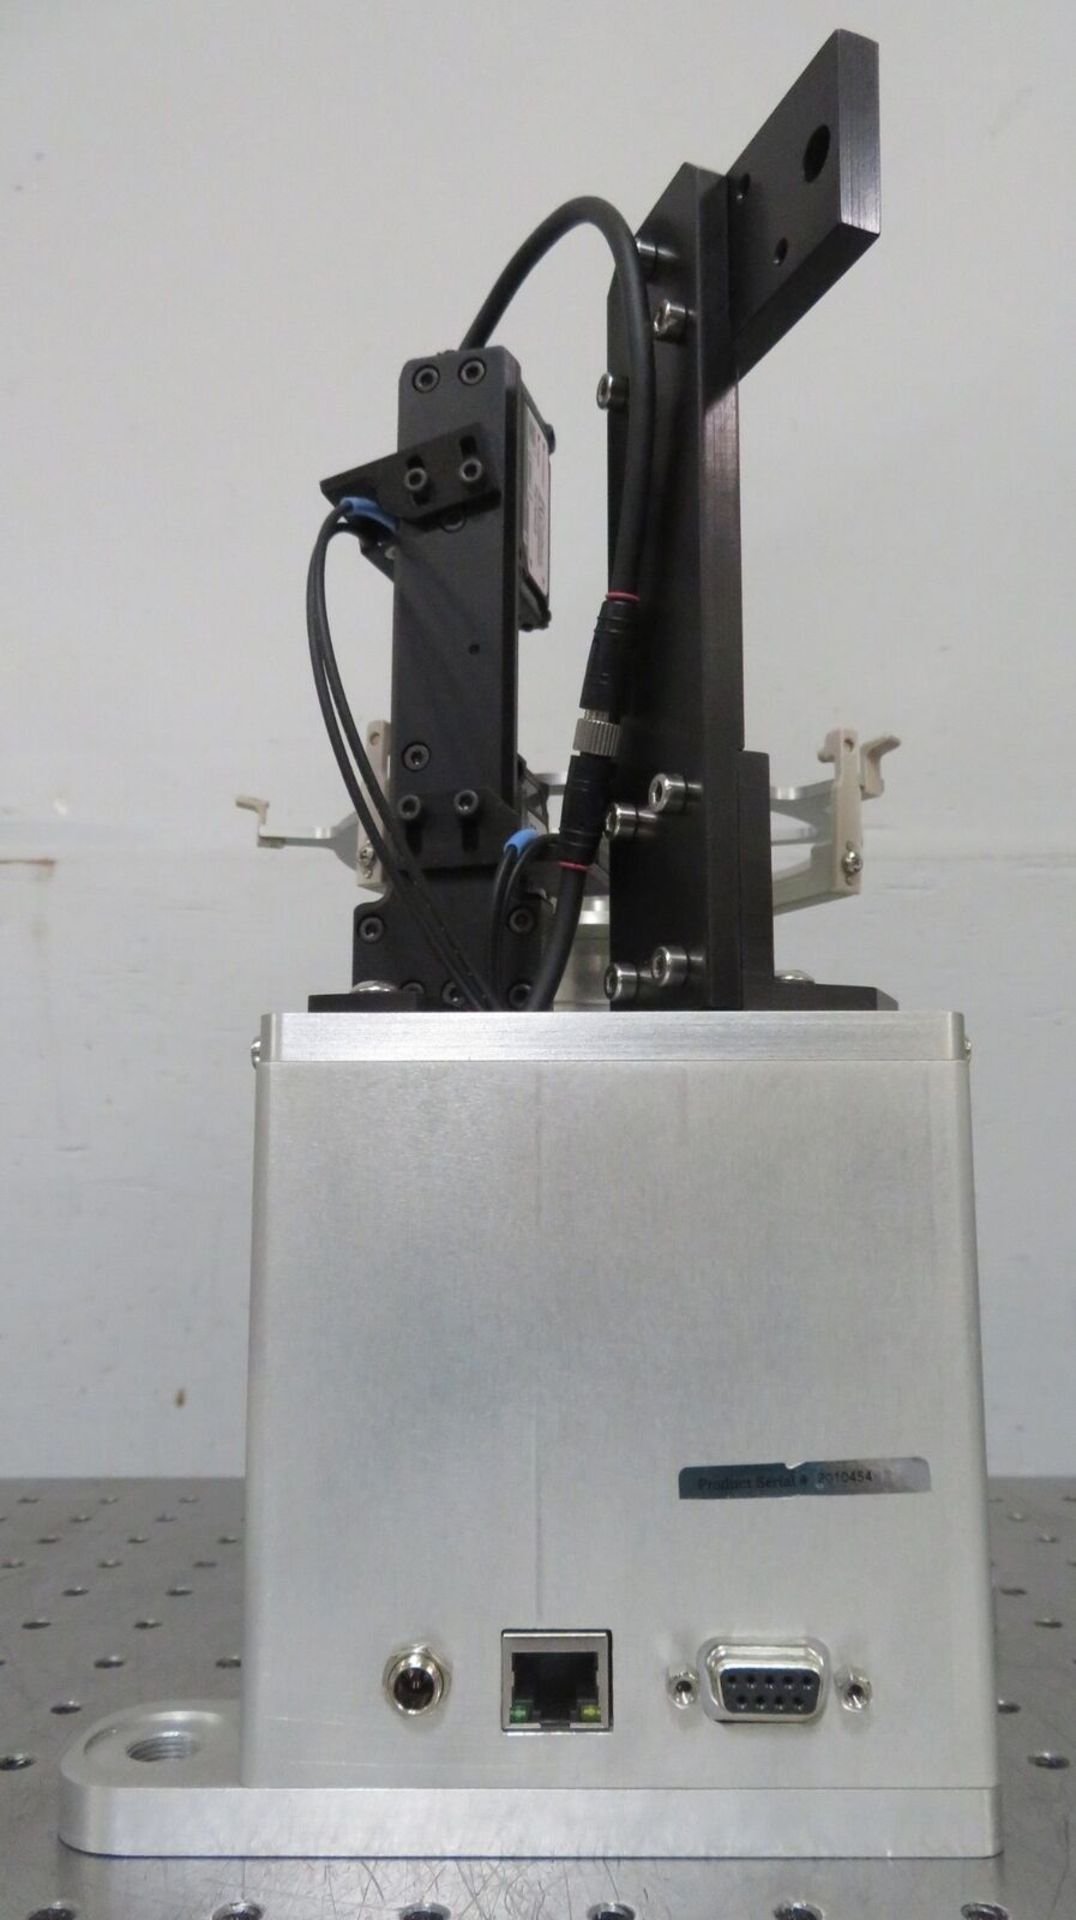 Wafer Prealigner Pre-Aligner 150mm + 200mm, Keyence IG-101 Laser Sensor - Gilroy - Image 6 of 8